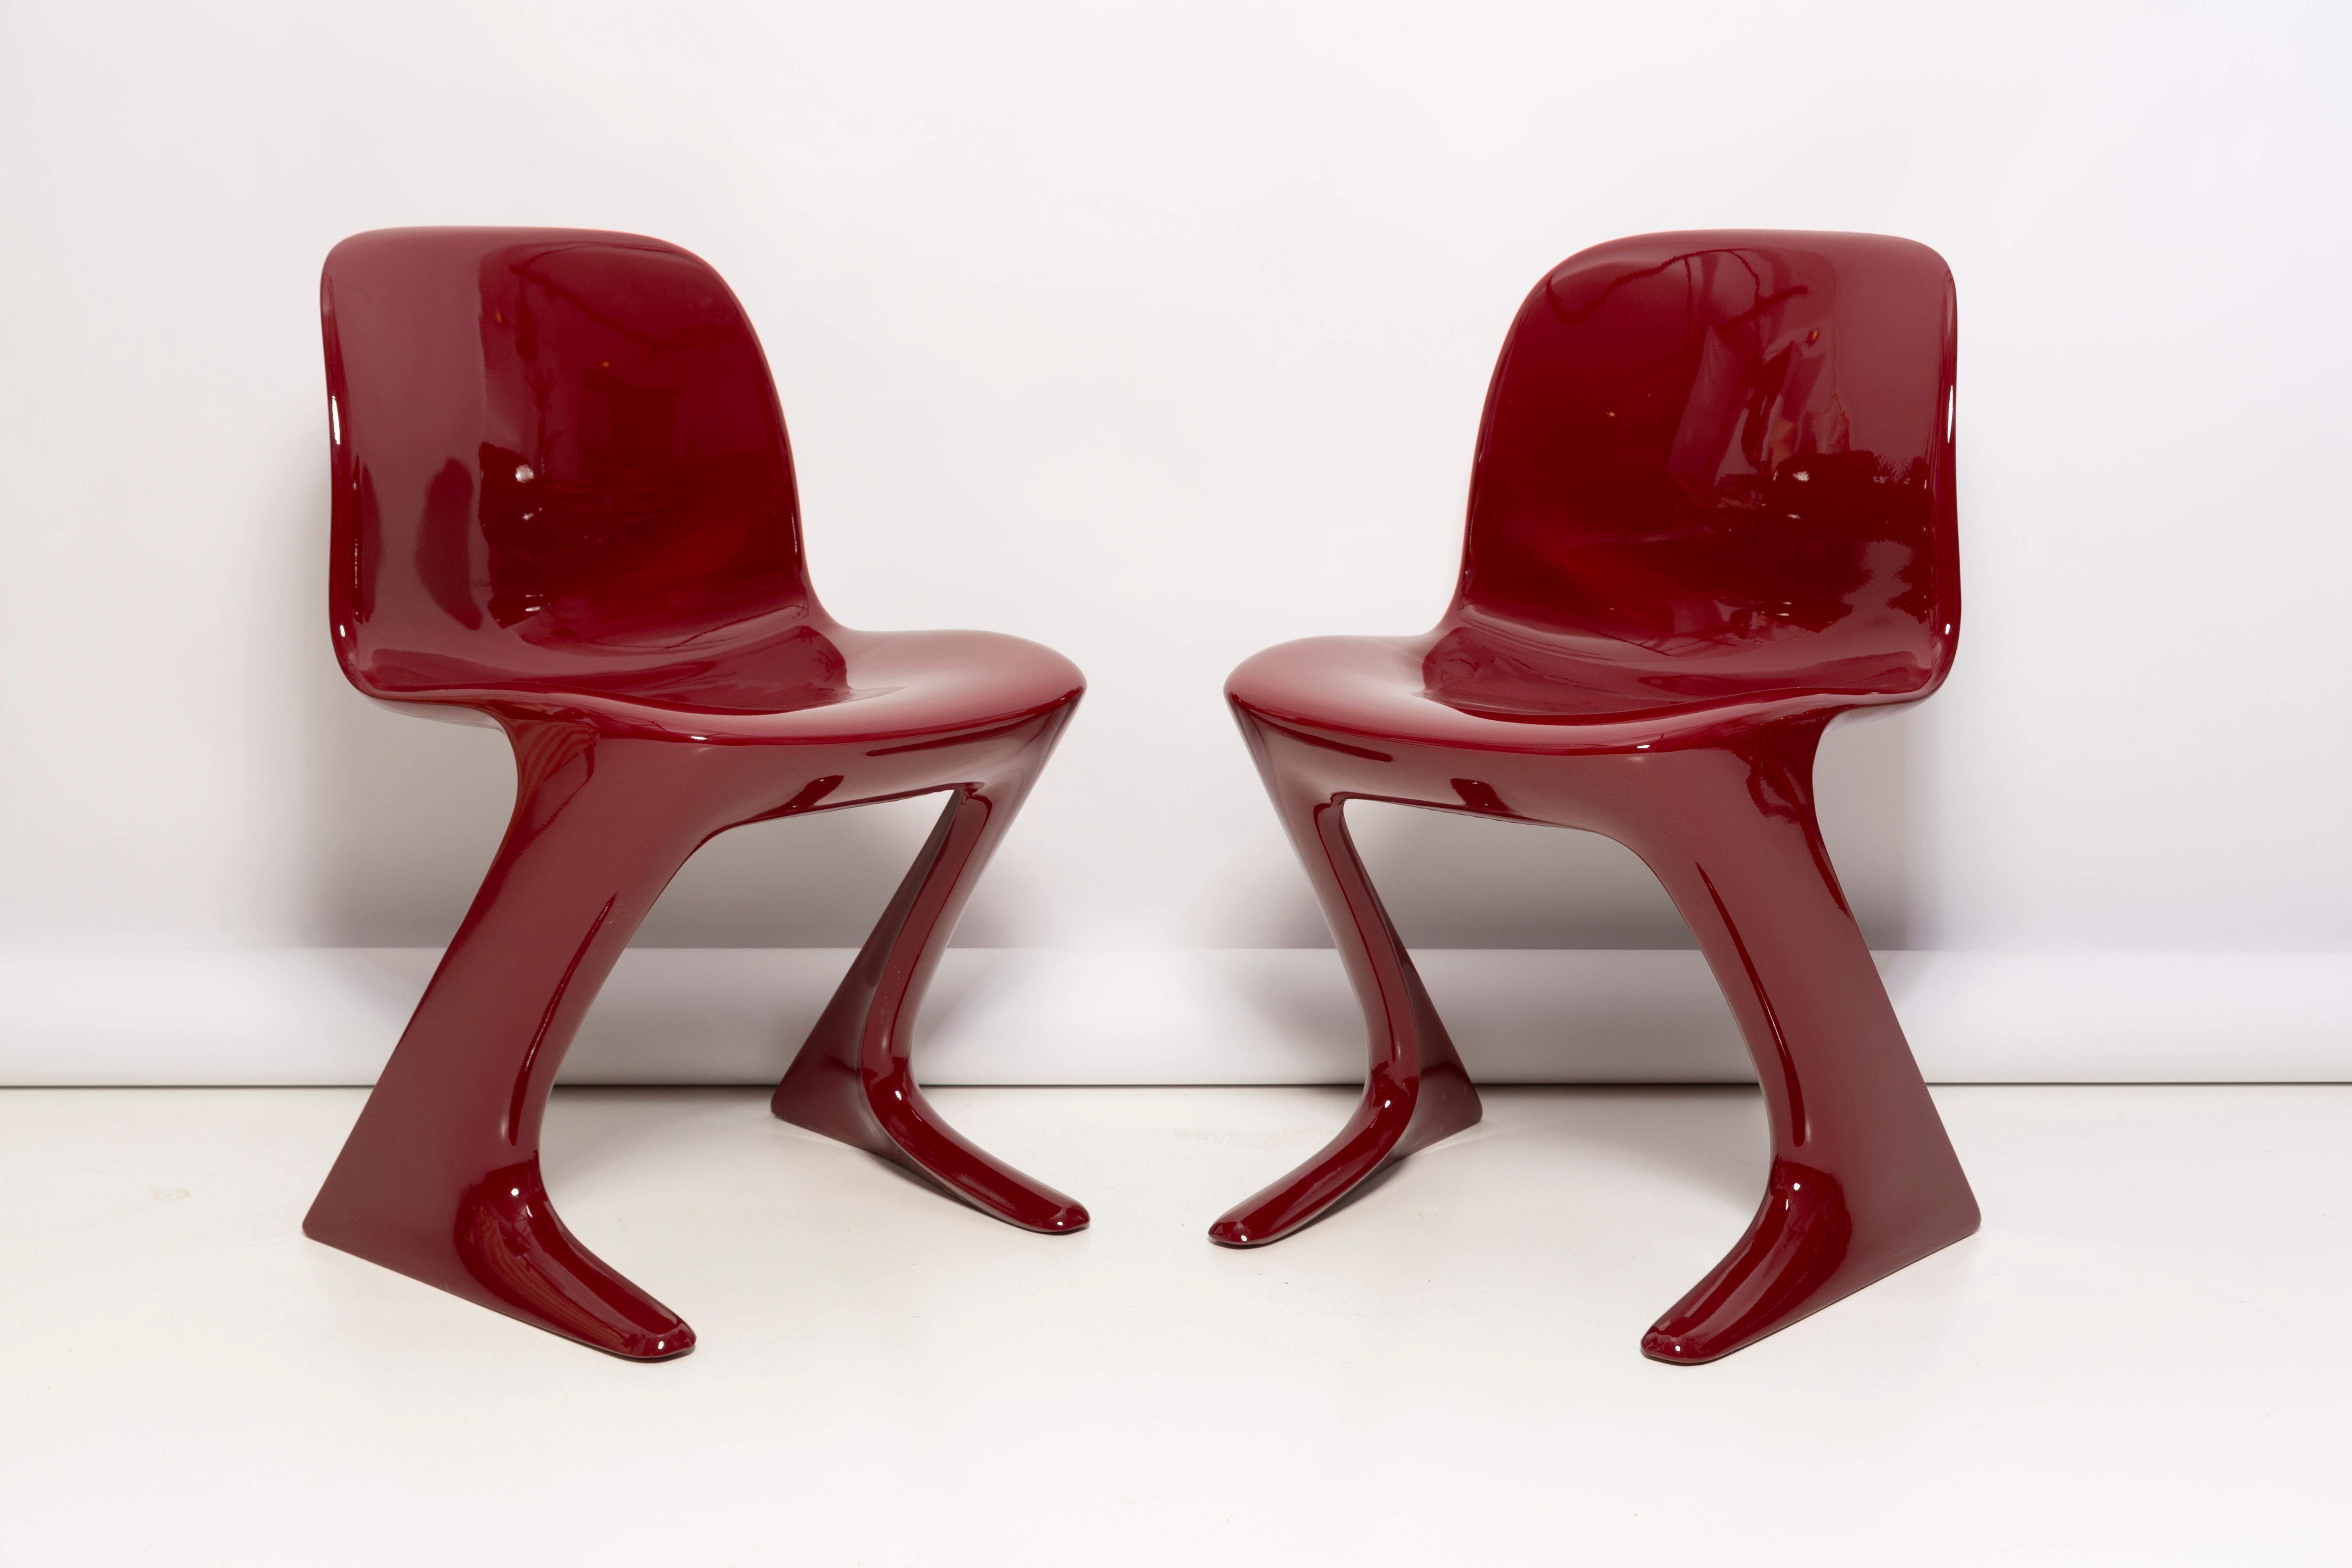 Ce modèle est appelé Calle Z. Conçue en 1968 en RDA par Ernst Moeckl et Siegfried Mehl, version allemande de la chaise Panton. Également appelée chaise kangourou ou chaise variopur. Produit en Allemagne de l'Est.

La chaise a été entièrement rénovée